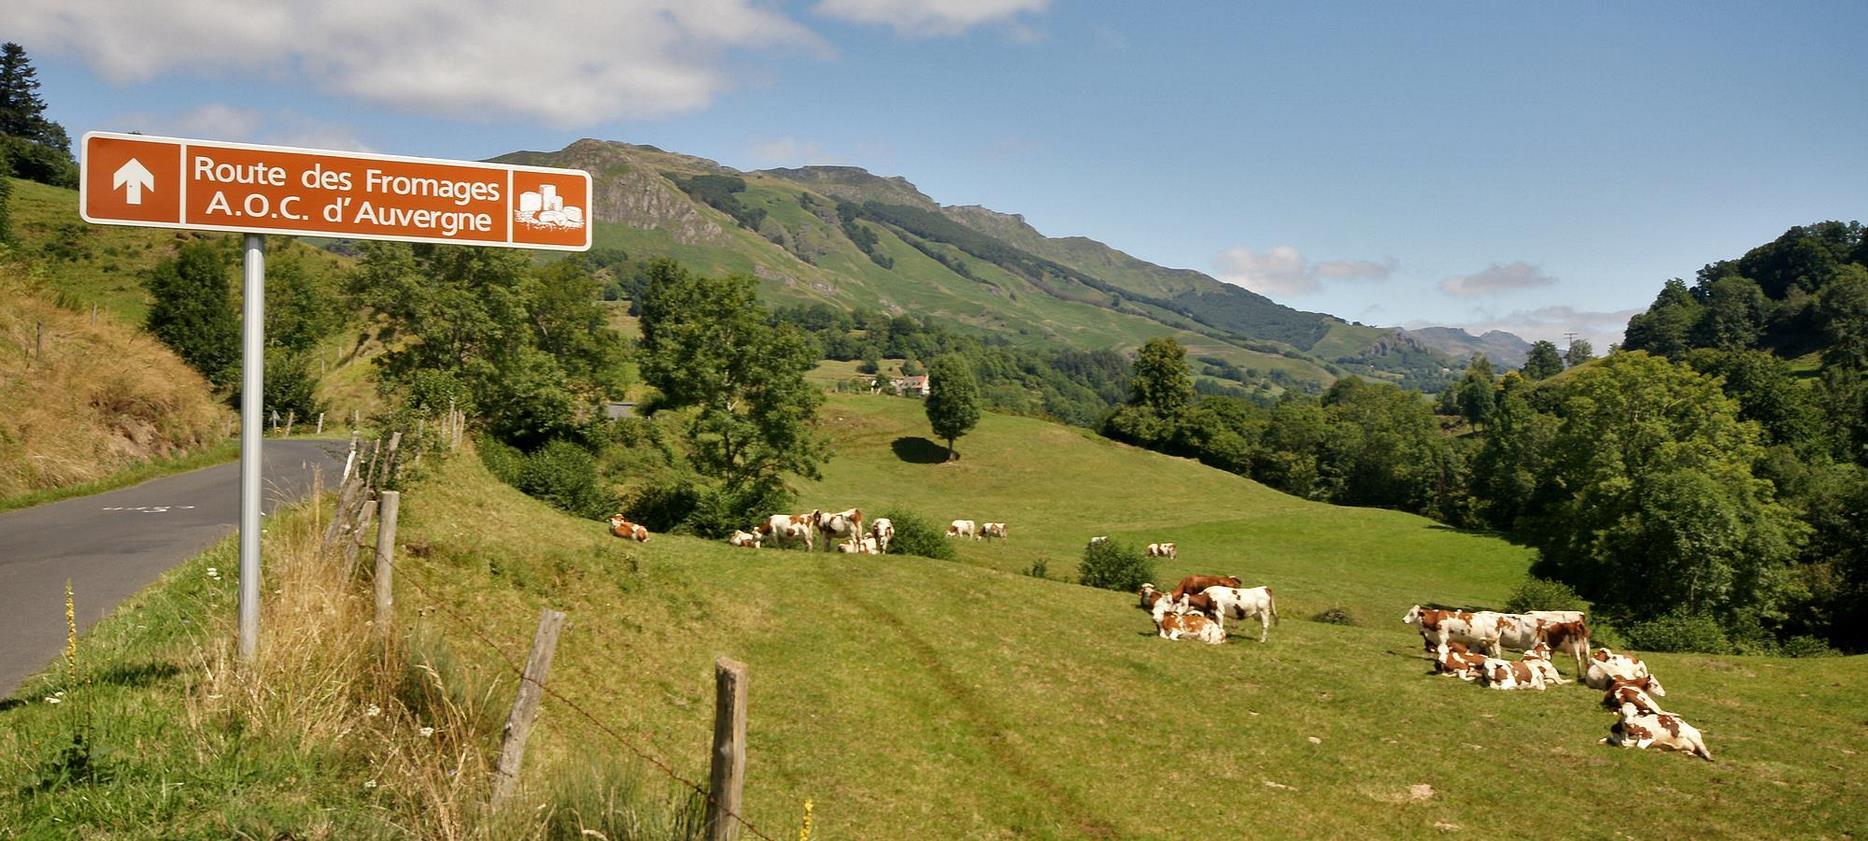 La Route des Fromages d'Auvergne vers le Mont Dore